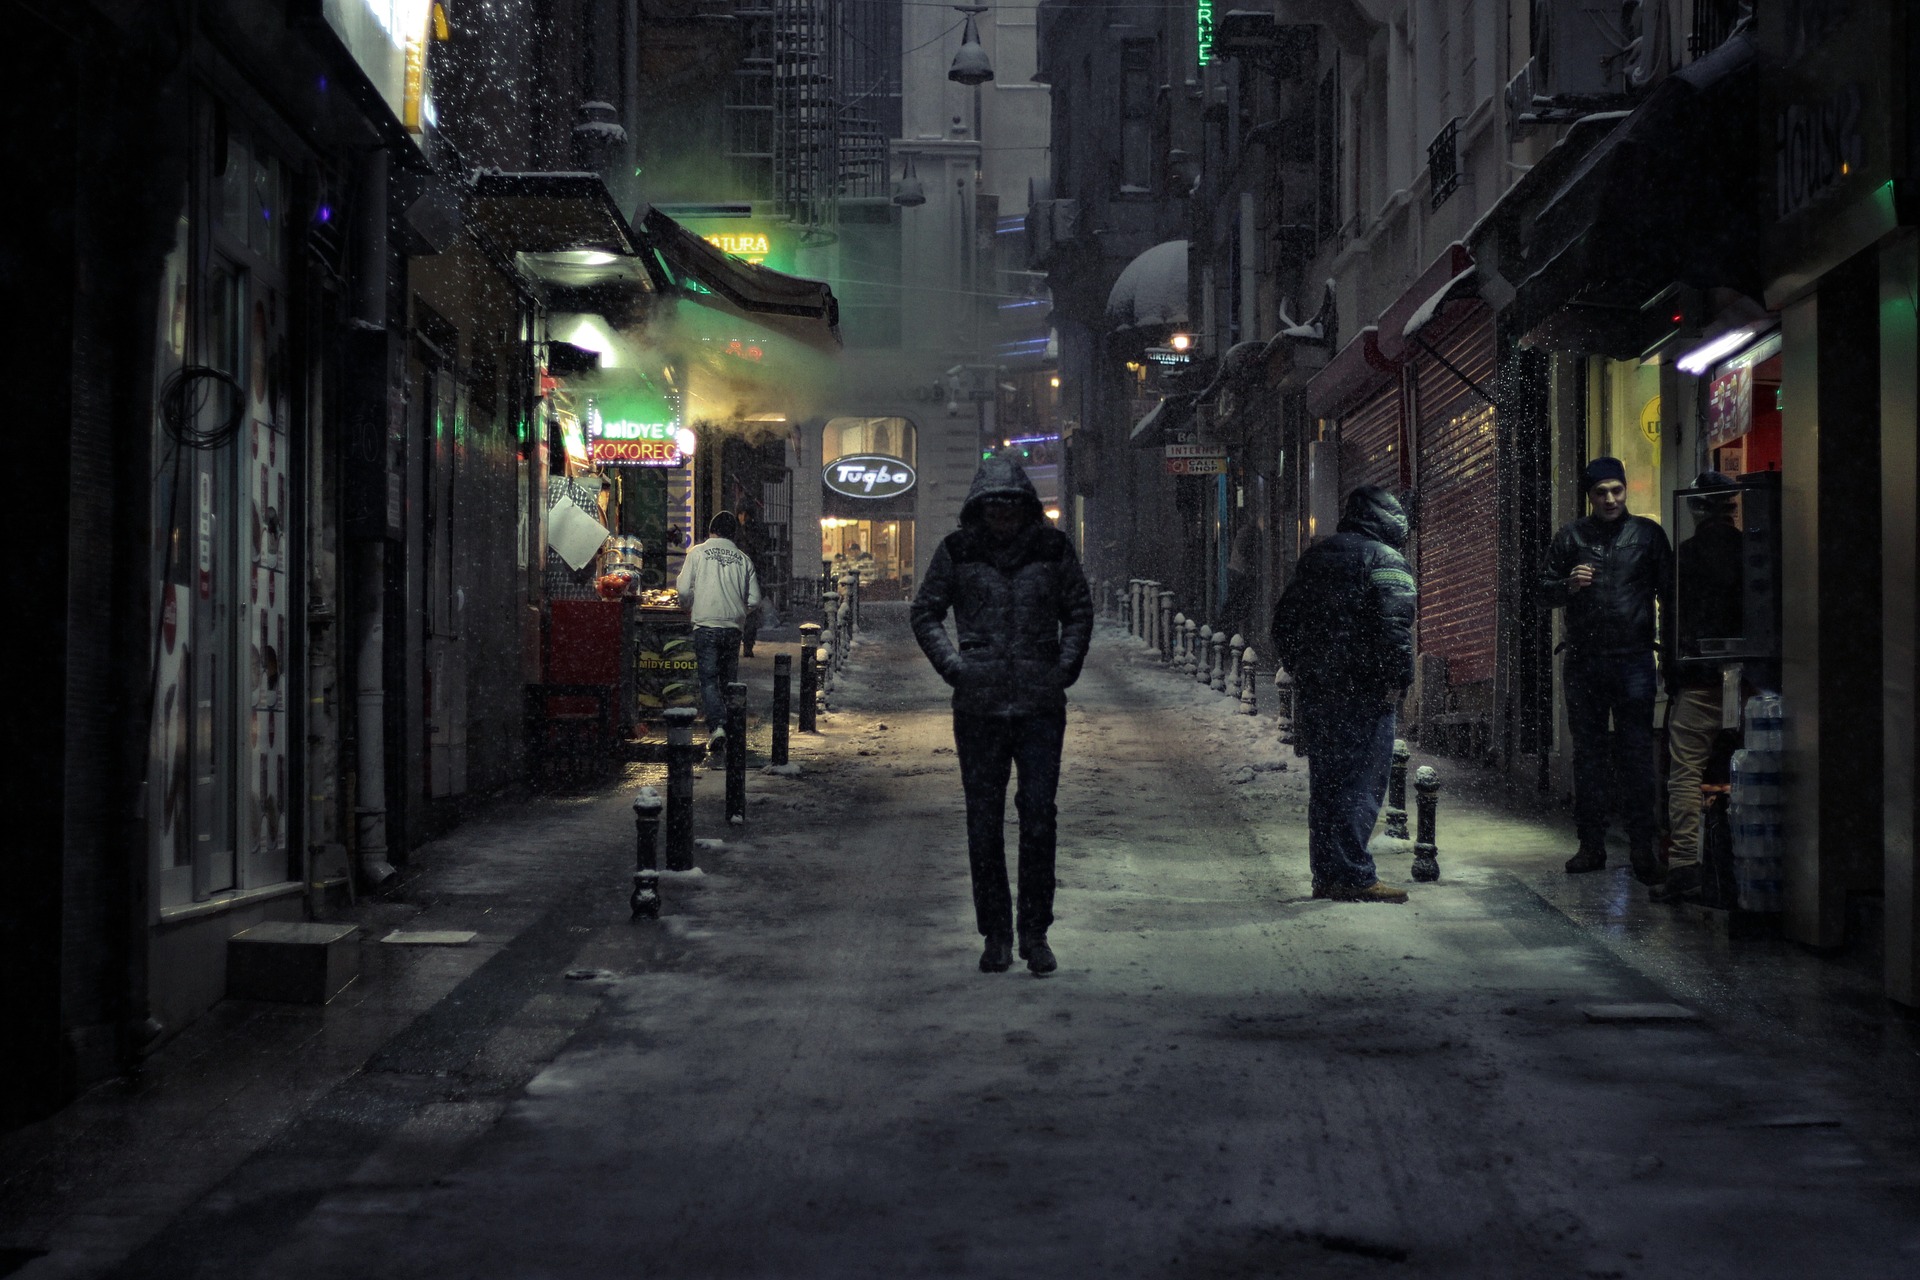 関わってはいけない雰囲気を出している黒ずくめの服装の男性が街中を歩いている画像